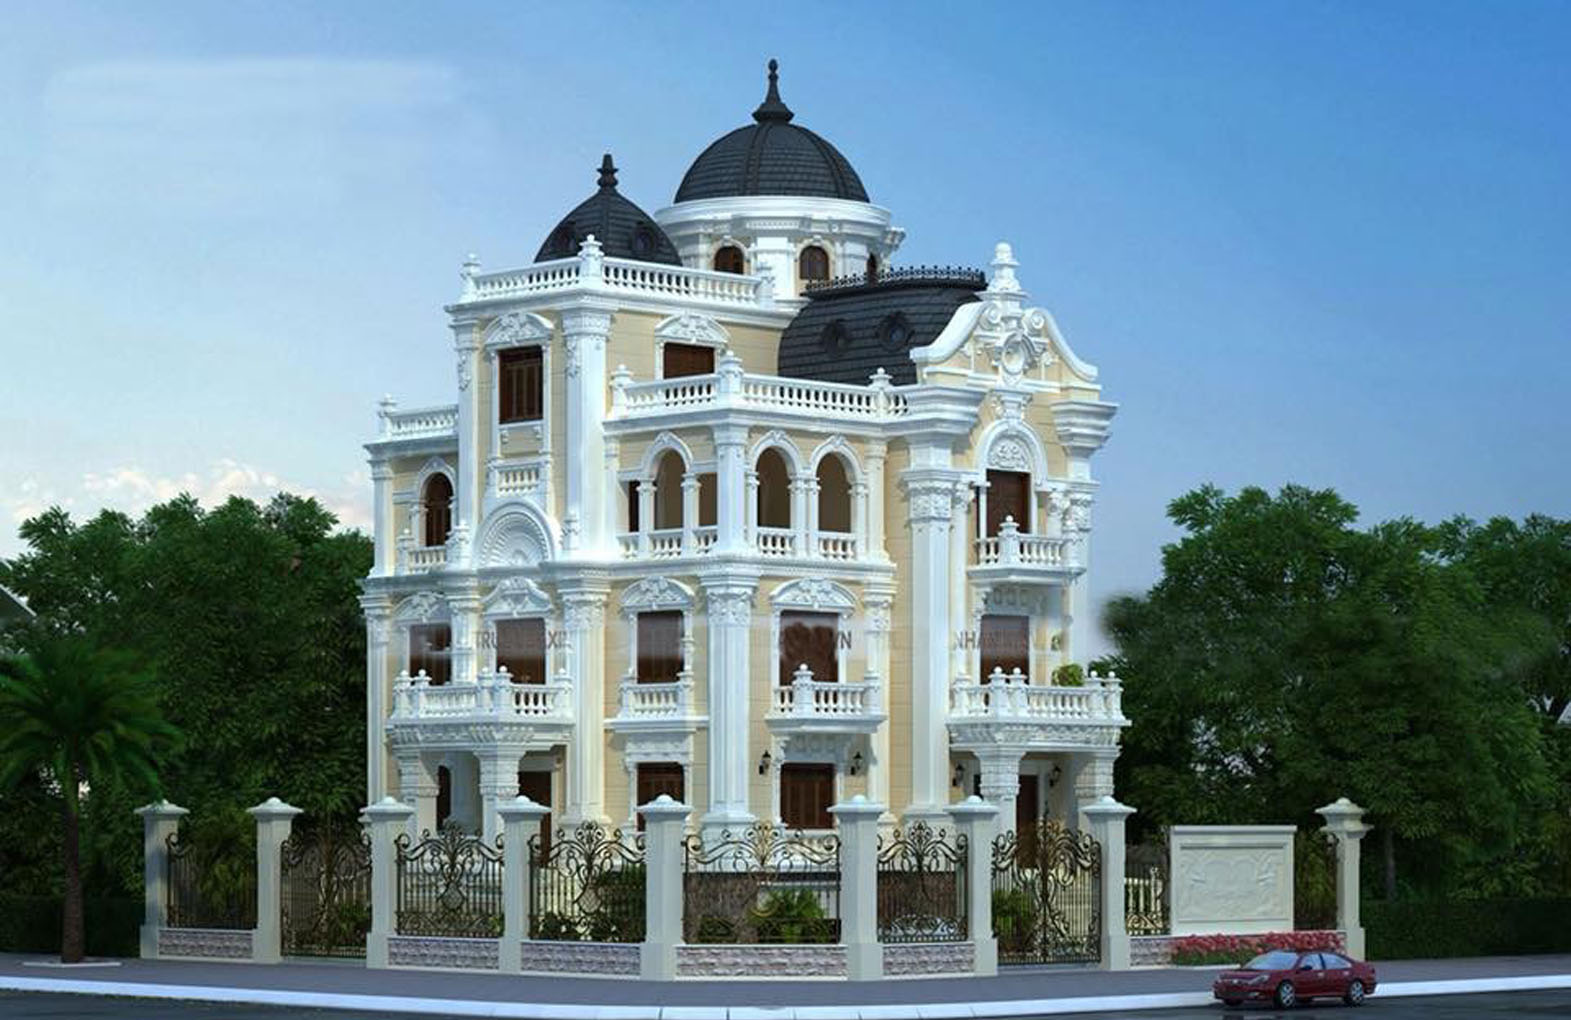 Tổng hợp các mẫu thiết kế biệt thự đẹp nhất Đà Nẵng